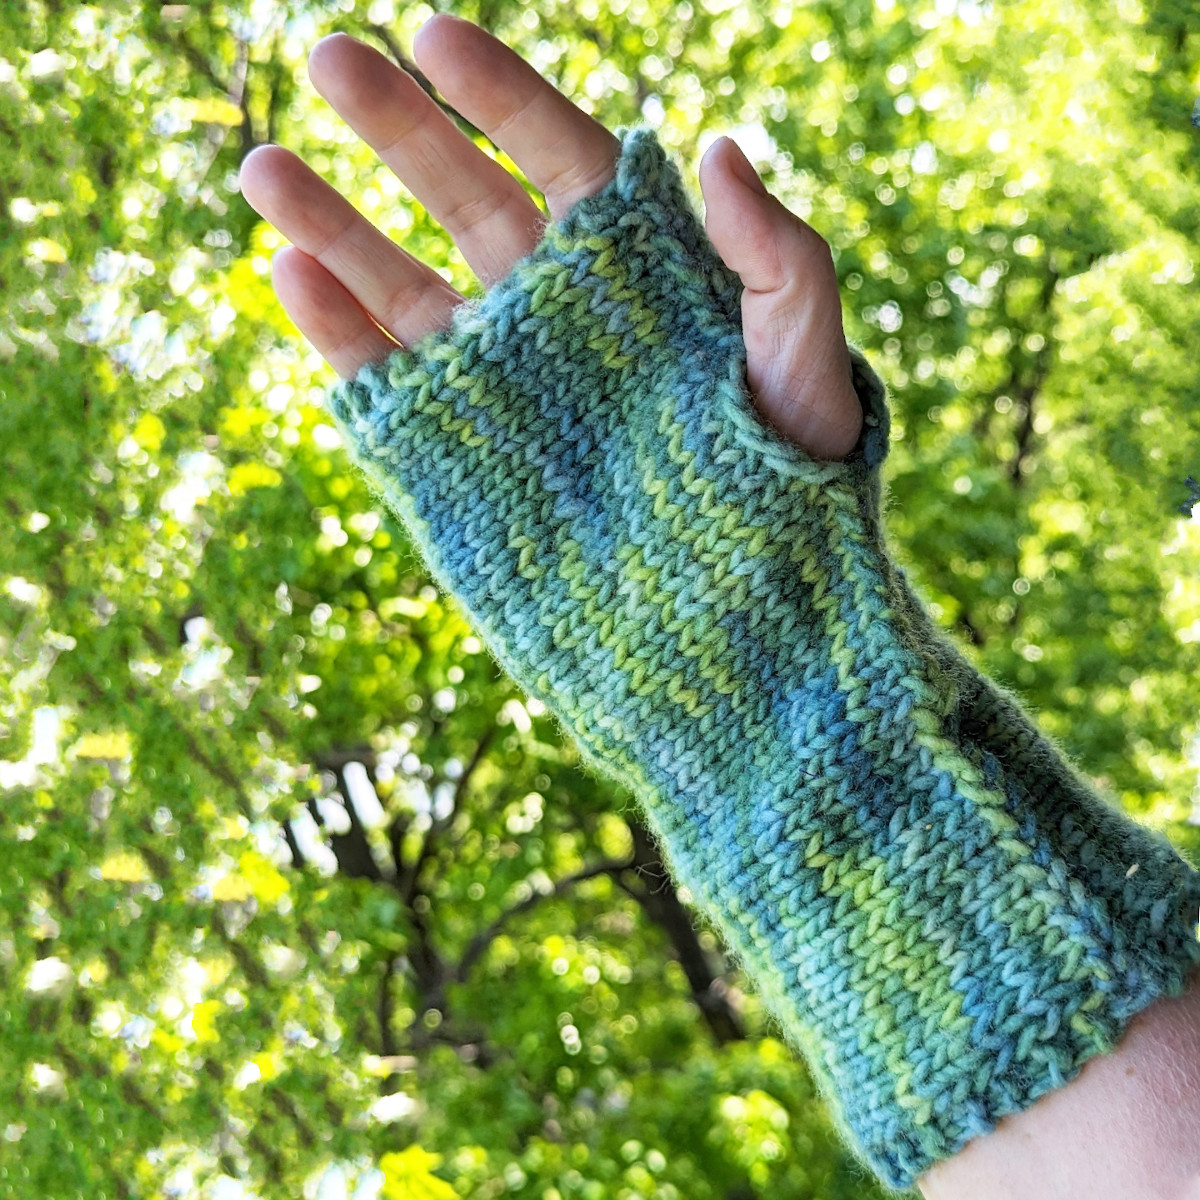 Knitted Glove by Dawn Zurell